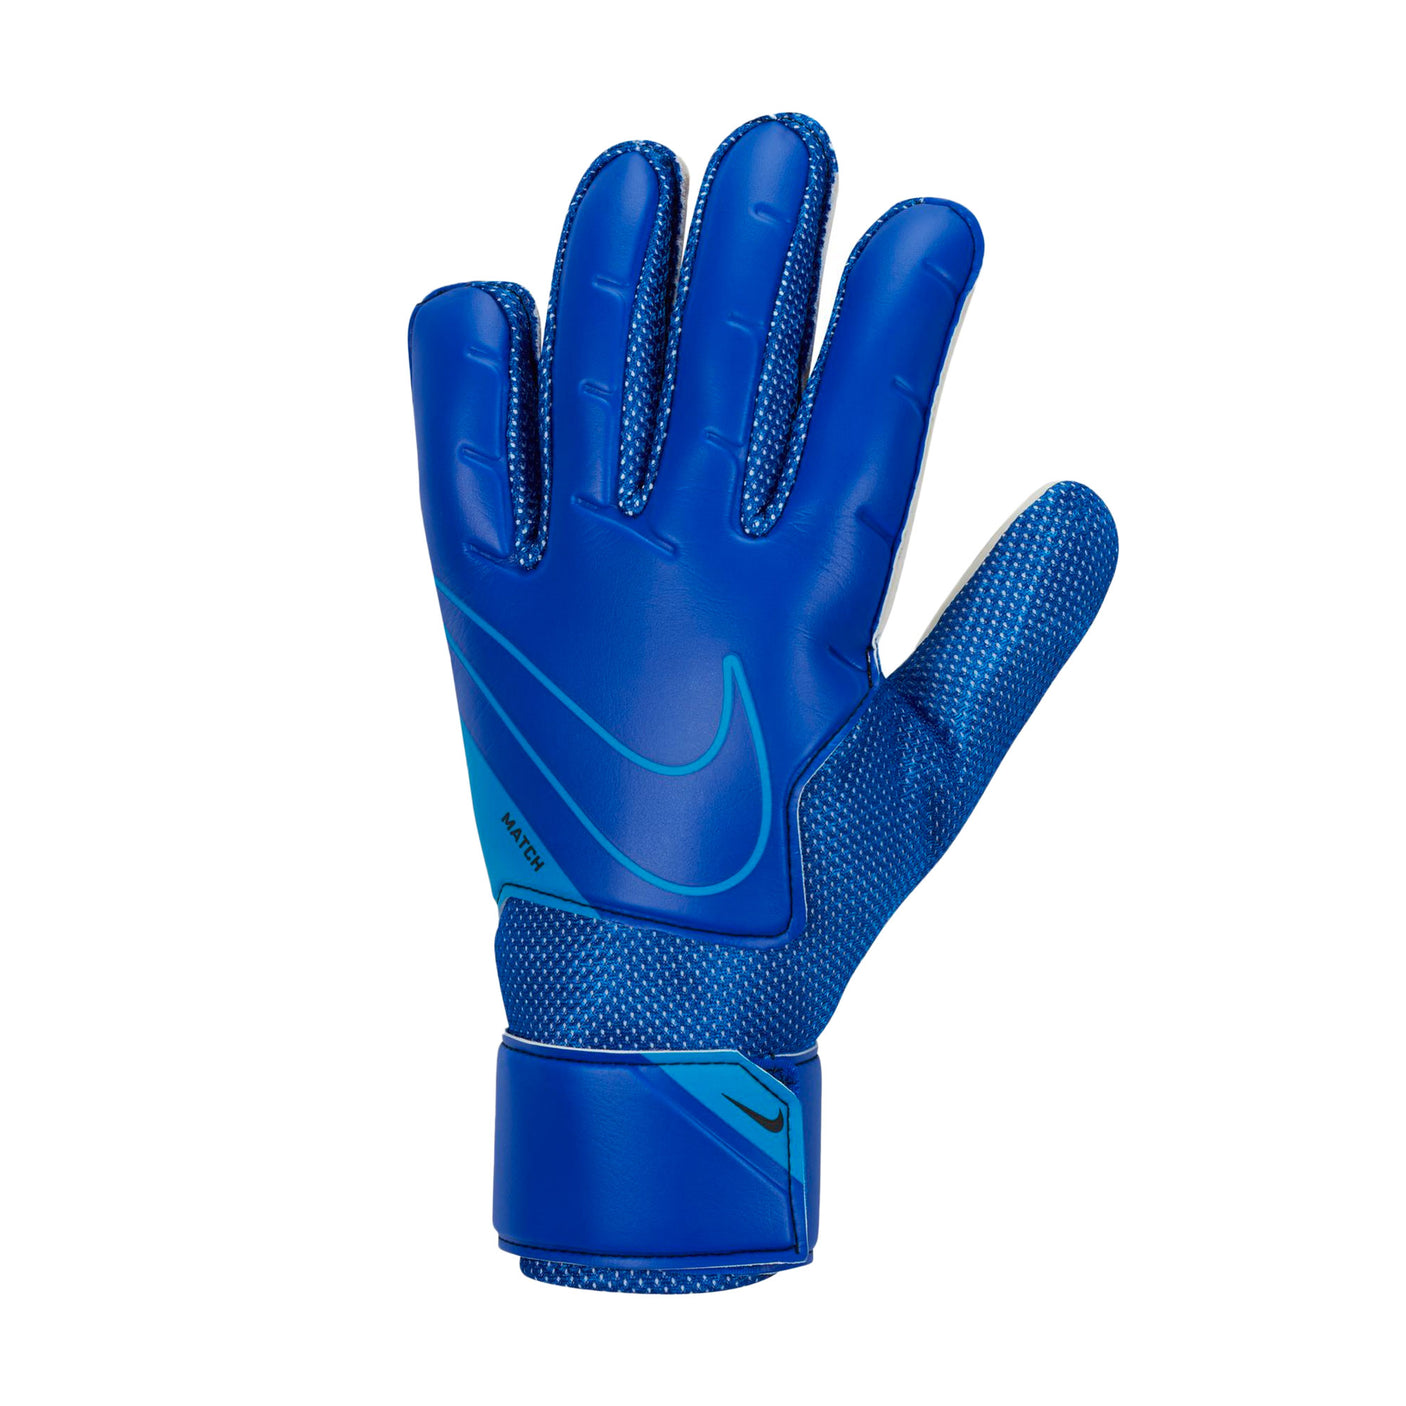 Nike Men's Match Goalkeeper Gloves Light Marine/Blackened Blue Front